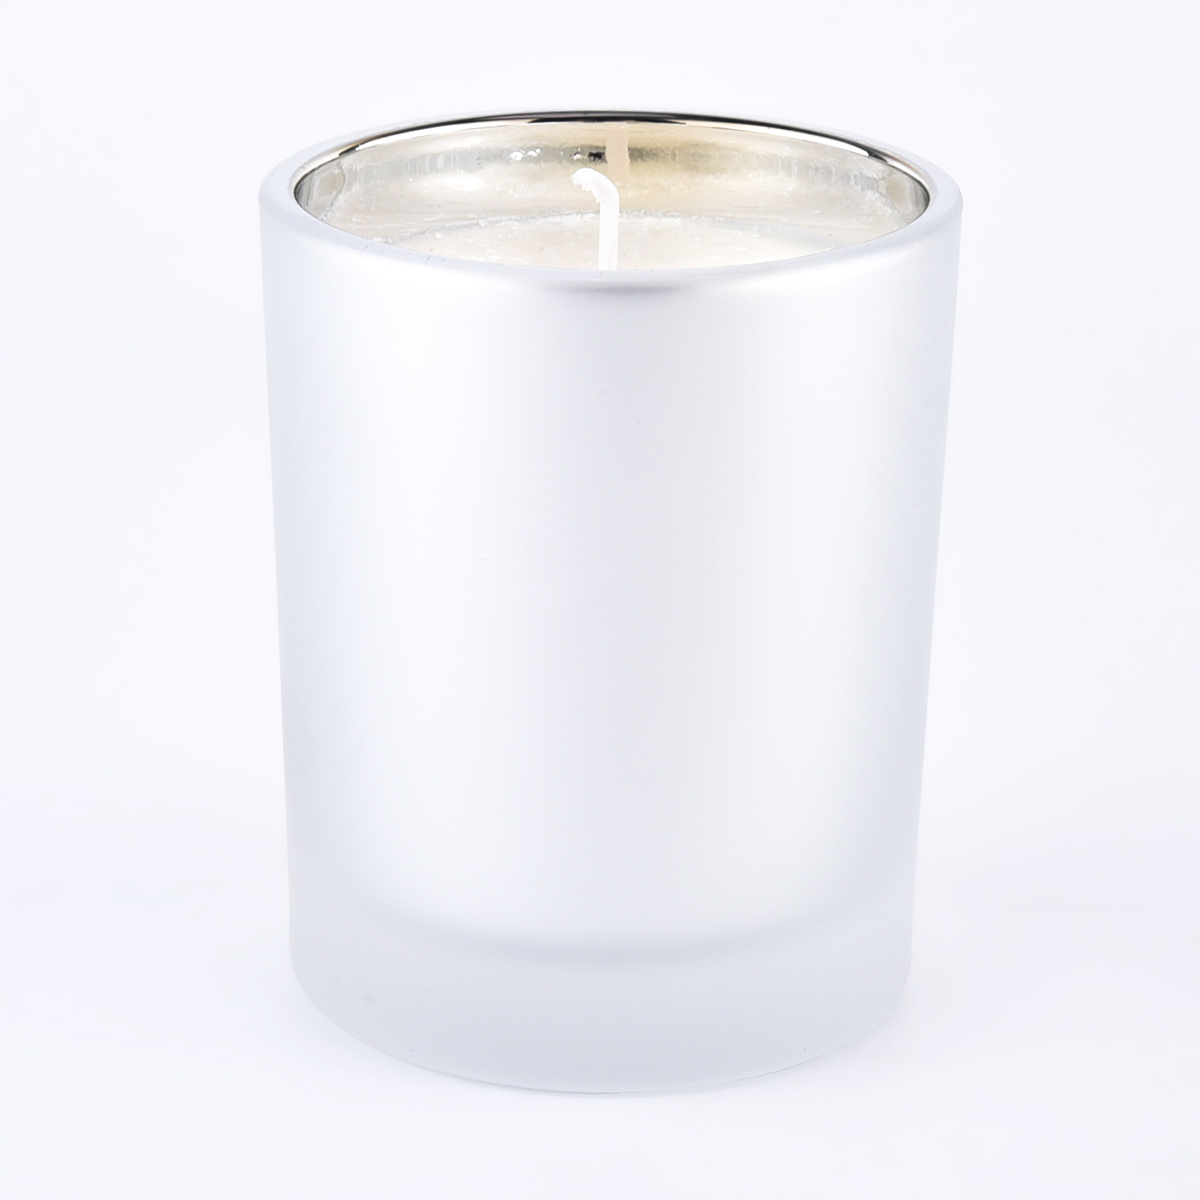 Recipientes para velas de vidrio de colores personalizados con interior de plata galvanizada para venta al por mayor